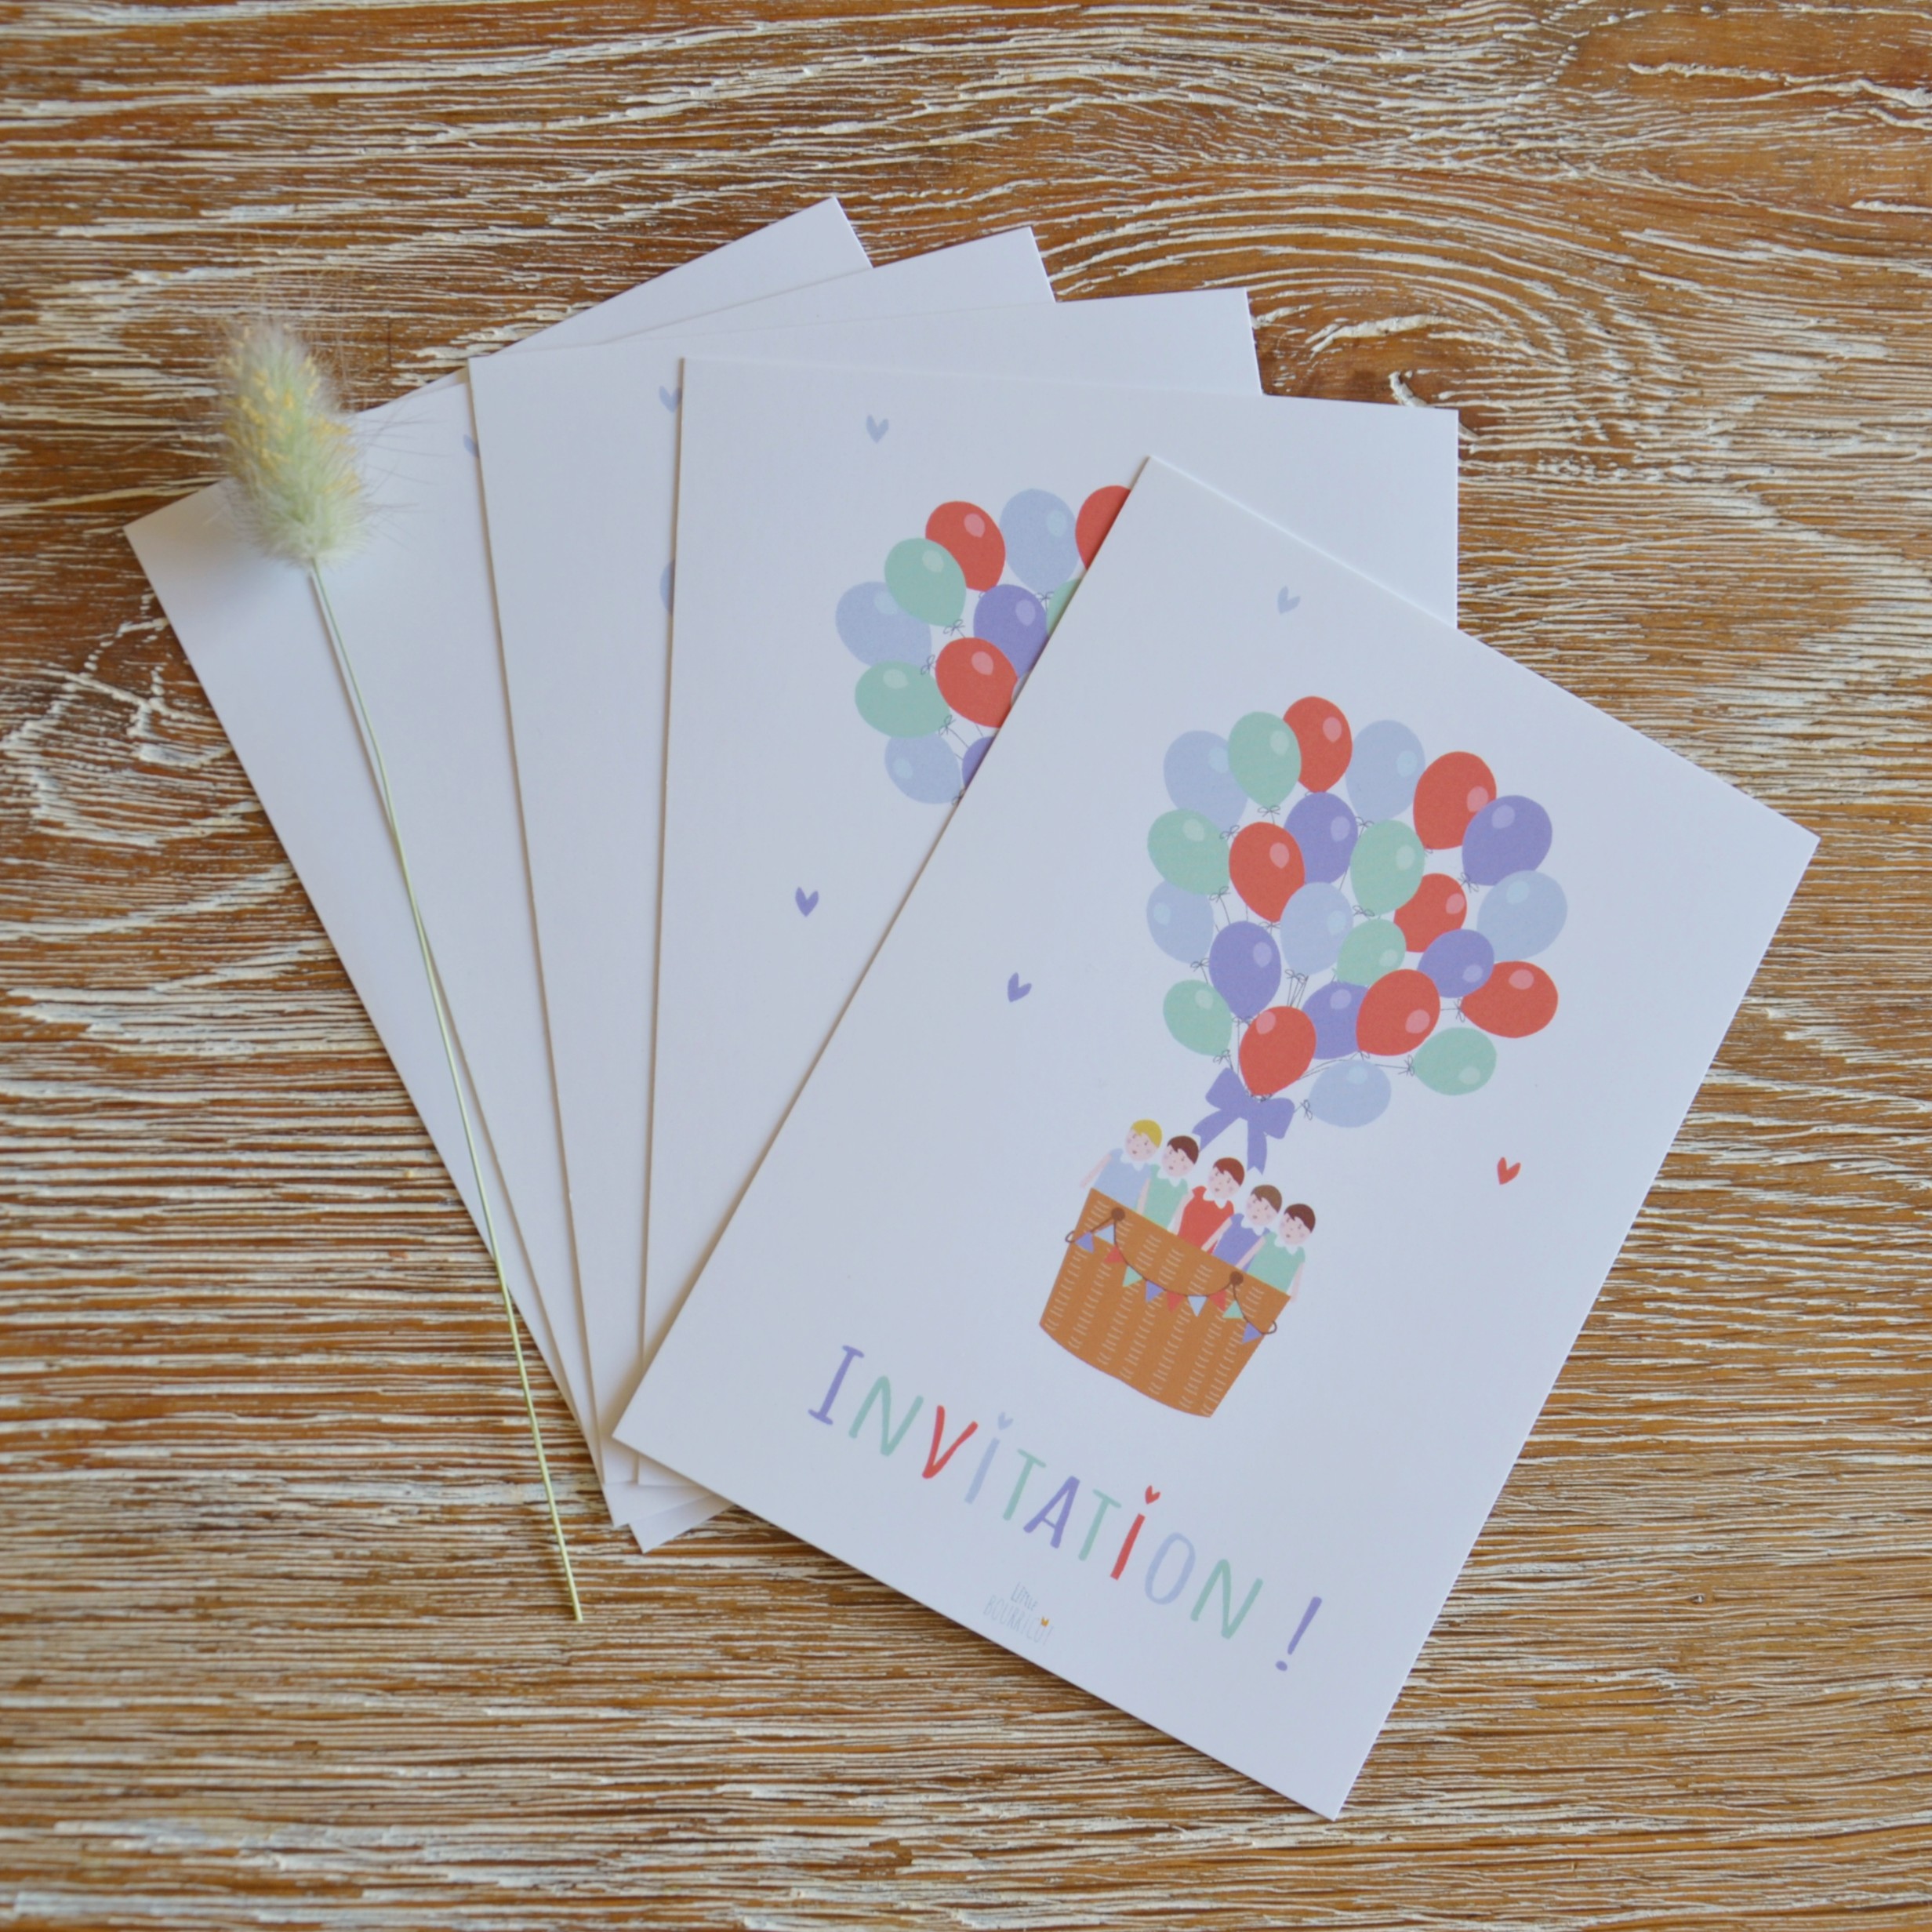 Cartes d'invitation anniversaire - Little bourricot